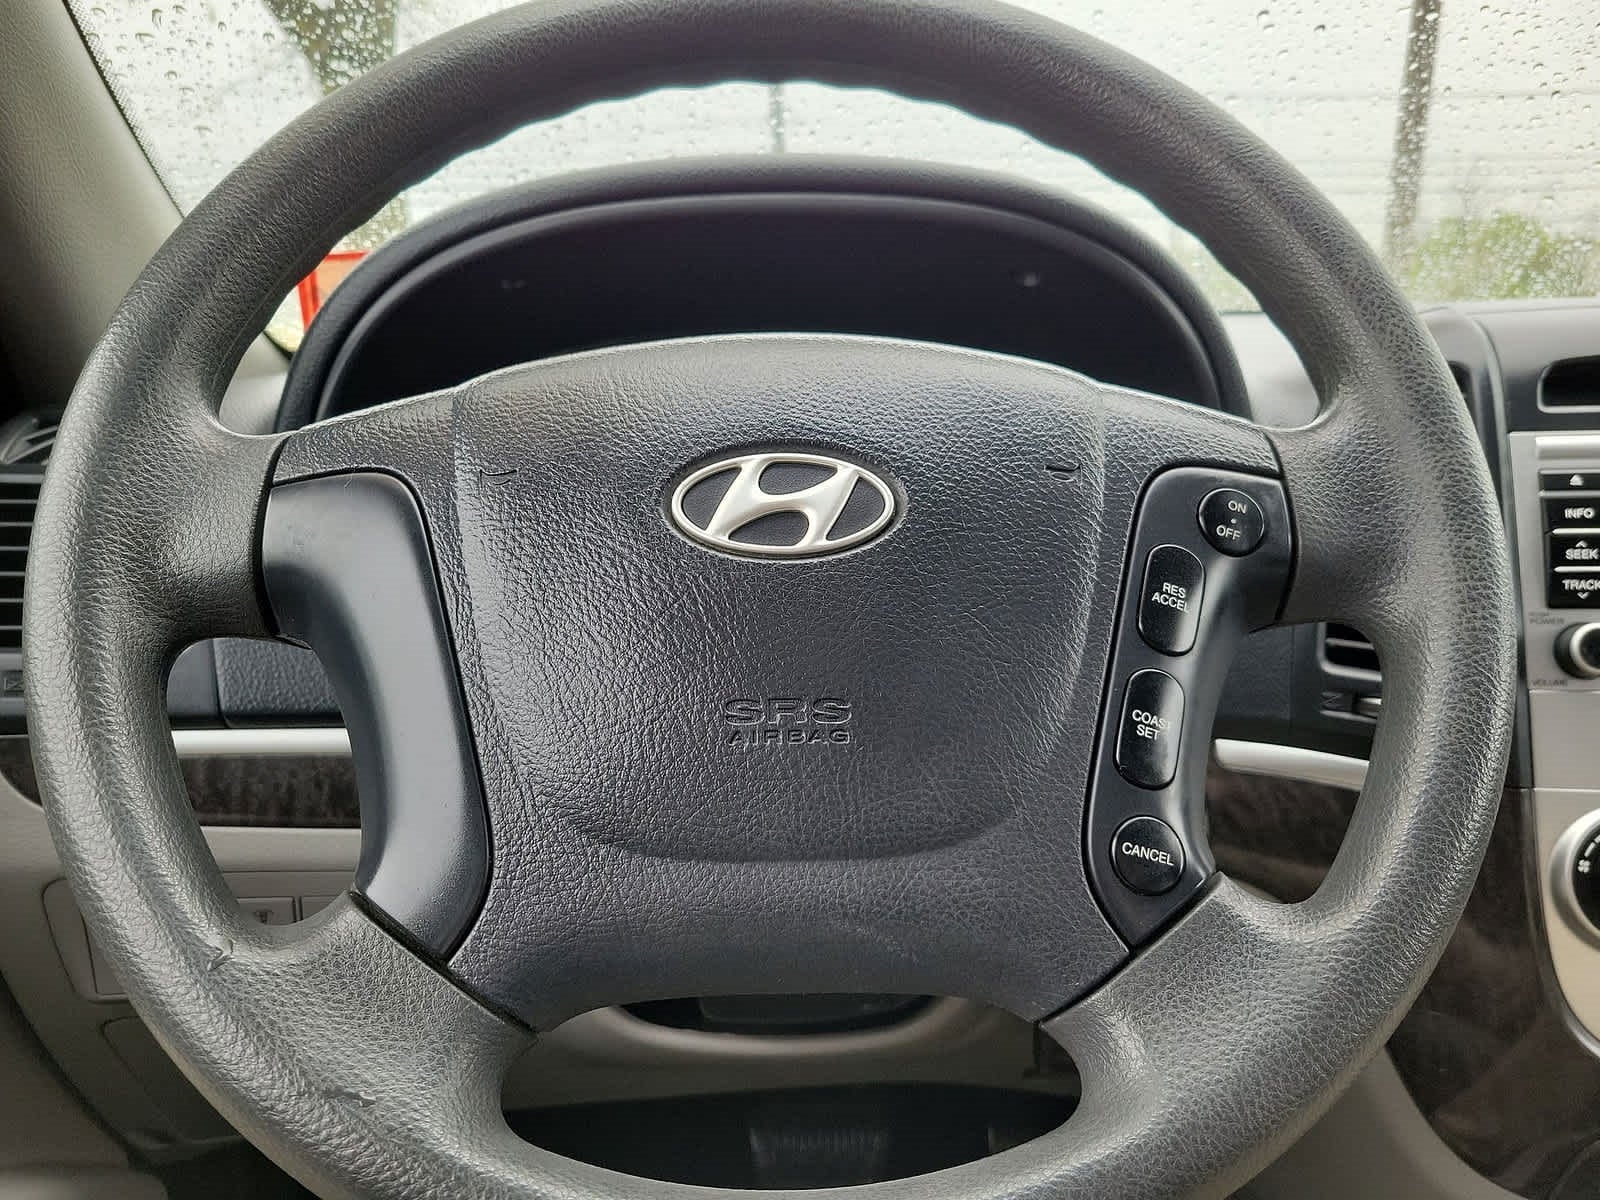 2009 Hyundai Santa Fe GLS